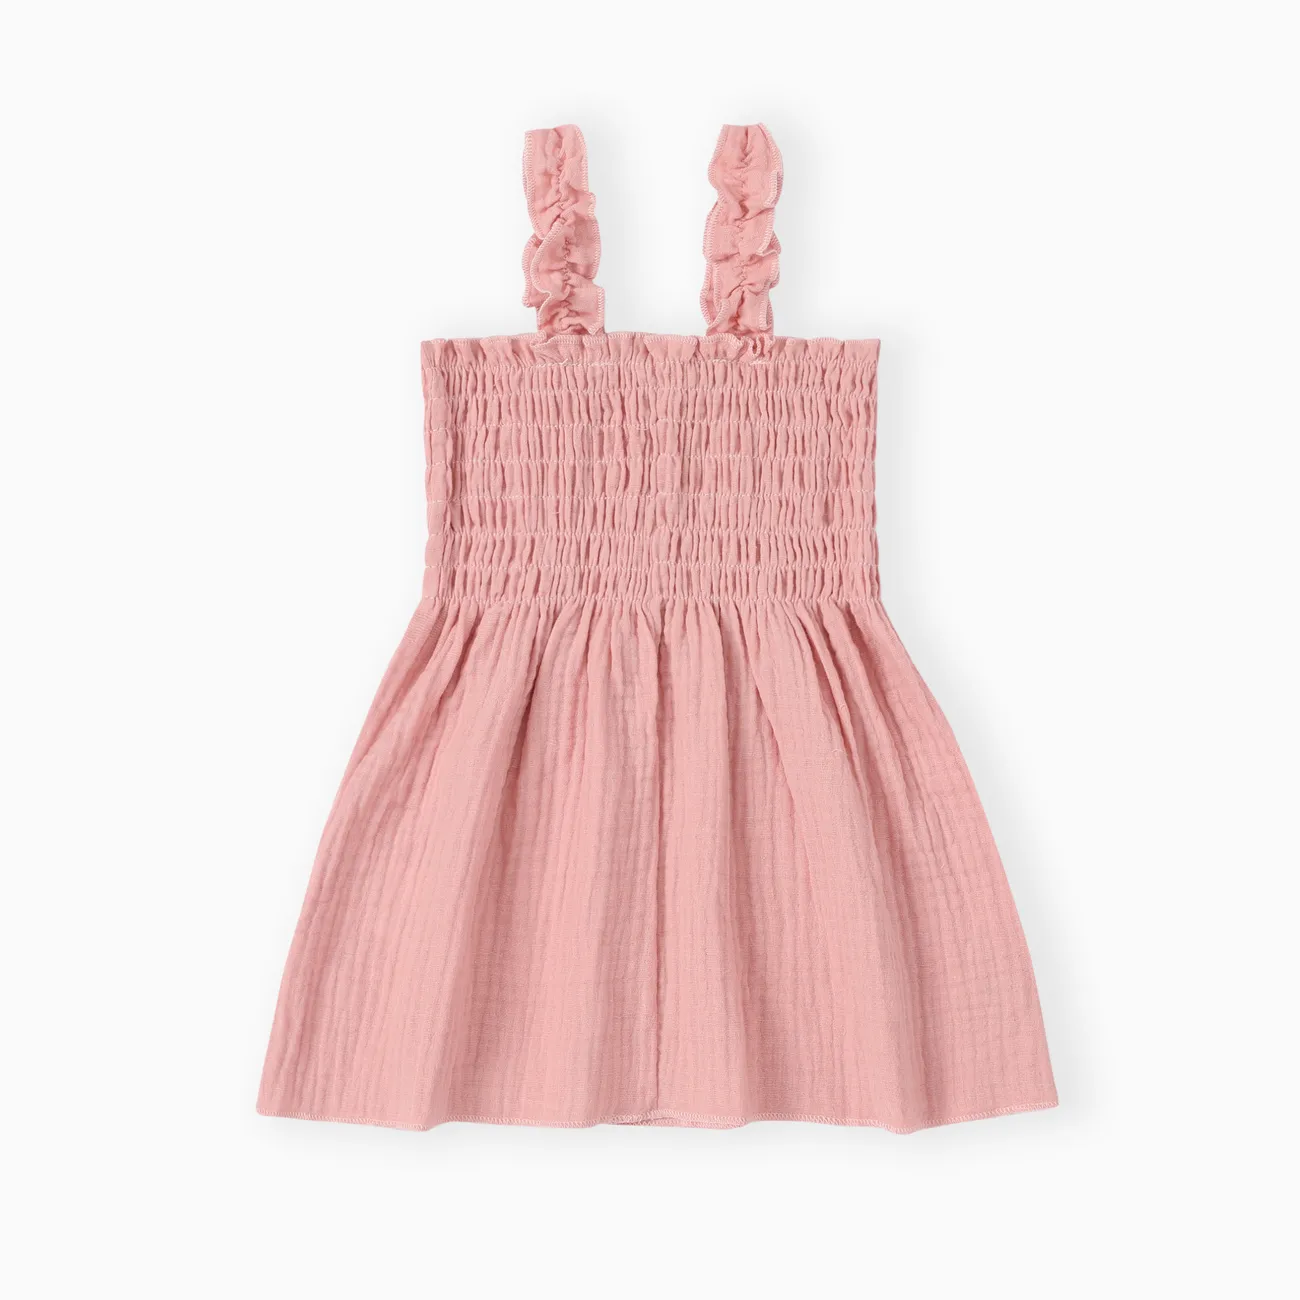 Baby Girls Casual Smocked Pink Cotton Dress  Pink big image 1